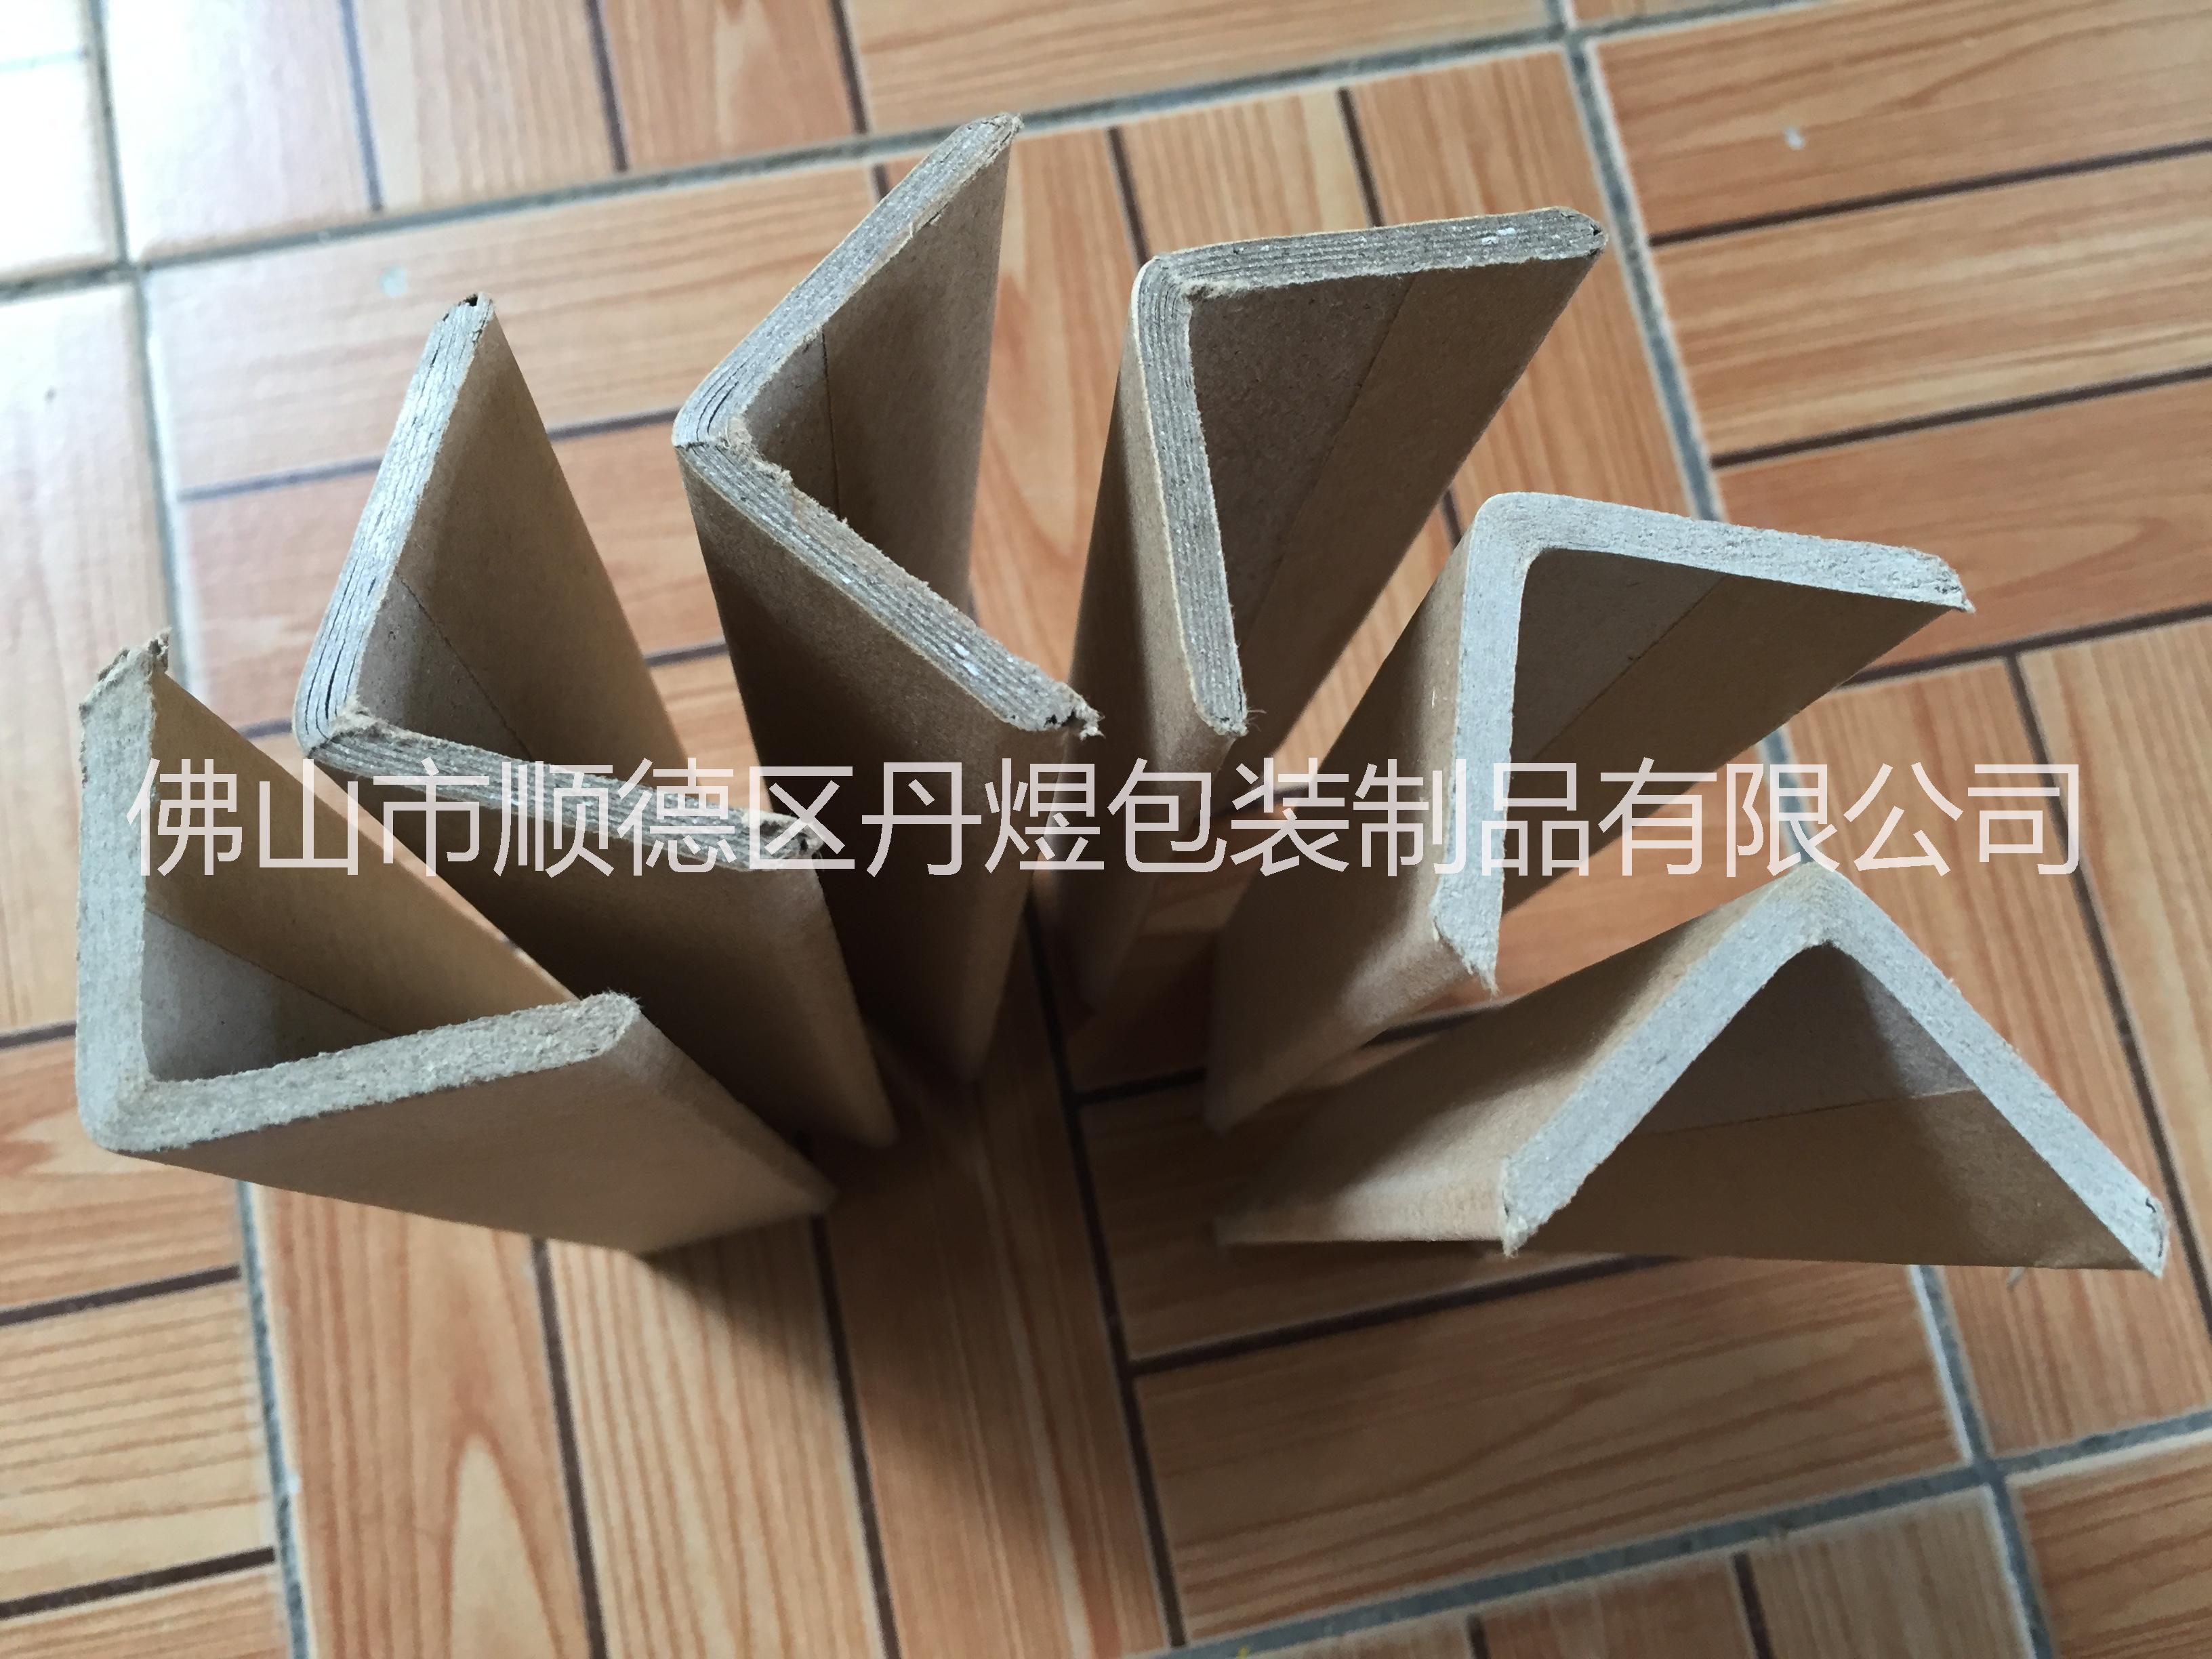 广州纸护角厂家-广州包装纸护角生产商-广州L型纸护角厂家定做图片